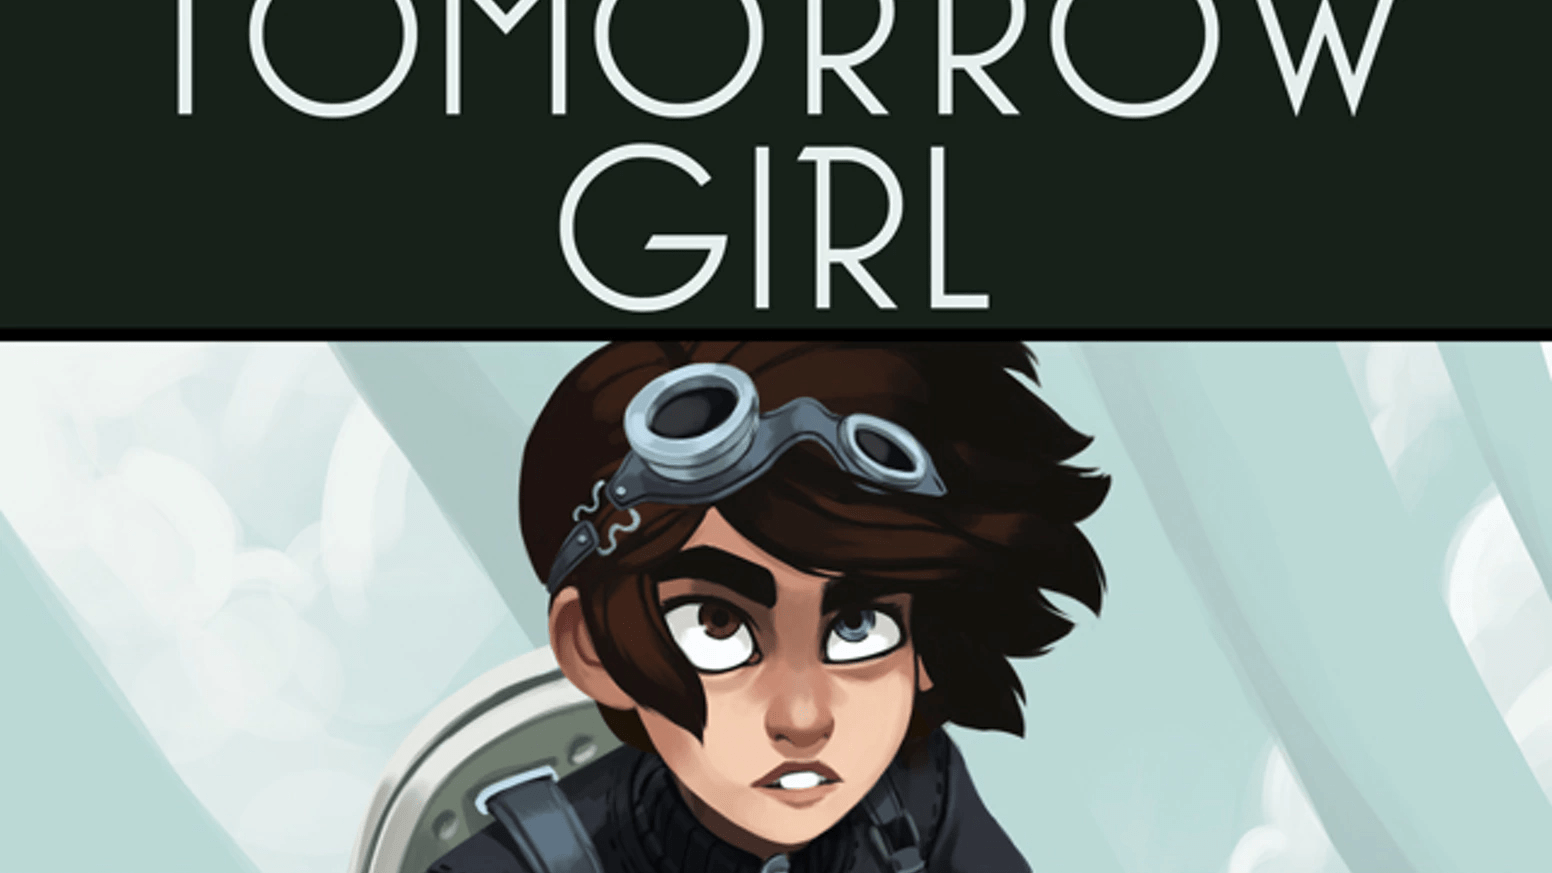 The Tomorrow Girl